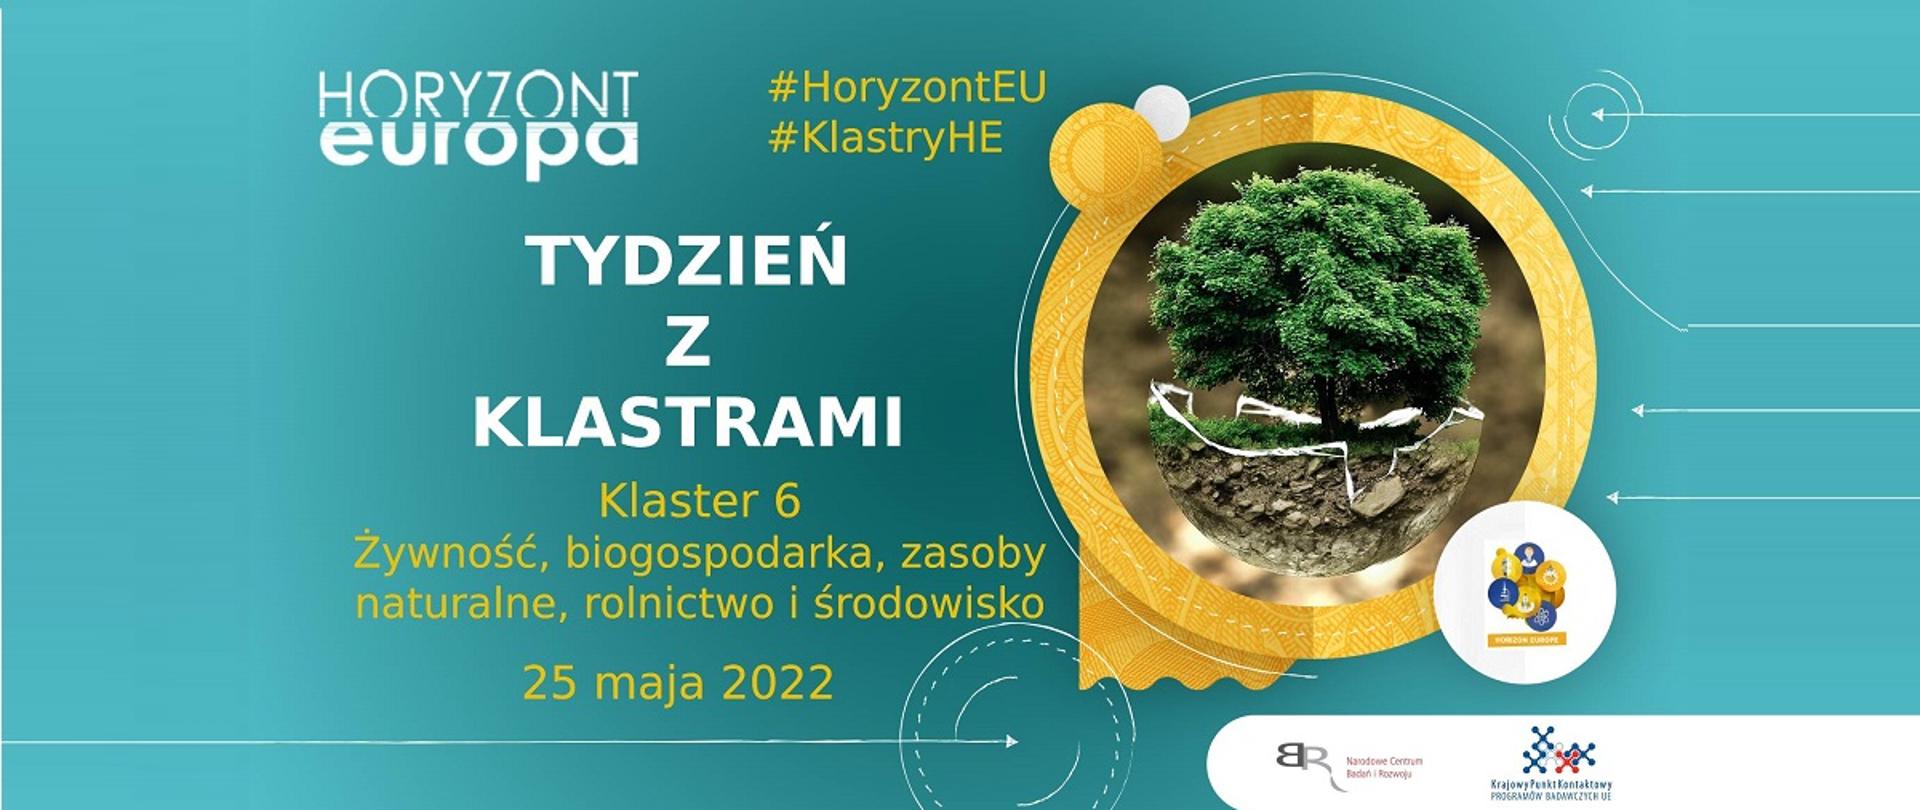 Horyzont Europa
#HoryzontEU
#KlastryHE
Tydzień z klastrami
Klaster 6
Żywność, biogospodarka, zasoby naturalne, rolnictwo i środowisko
25 maja 2022